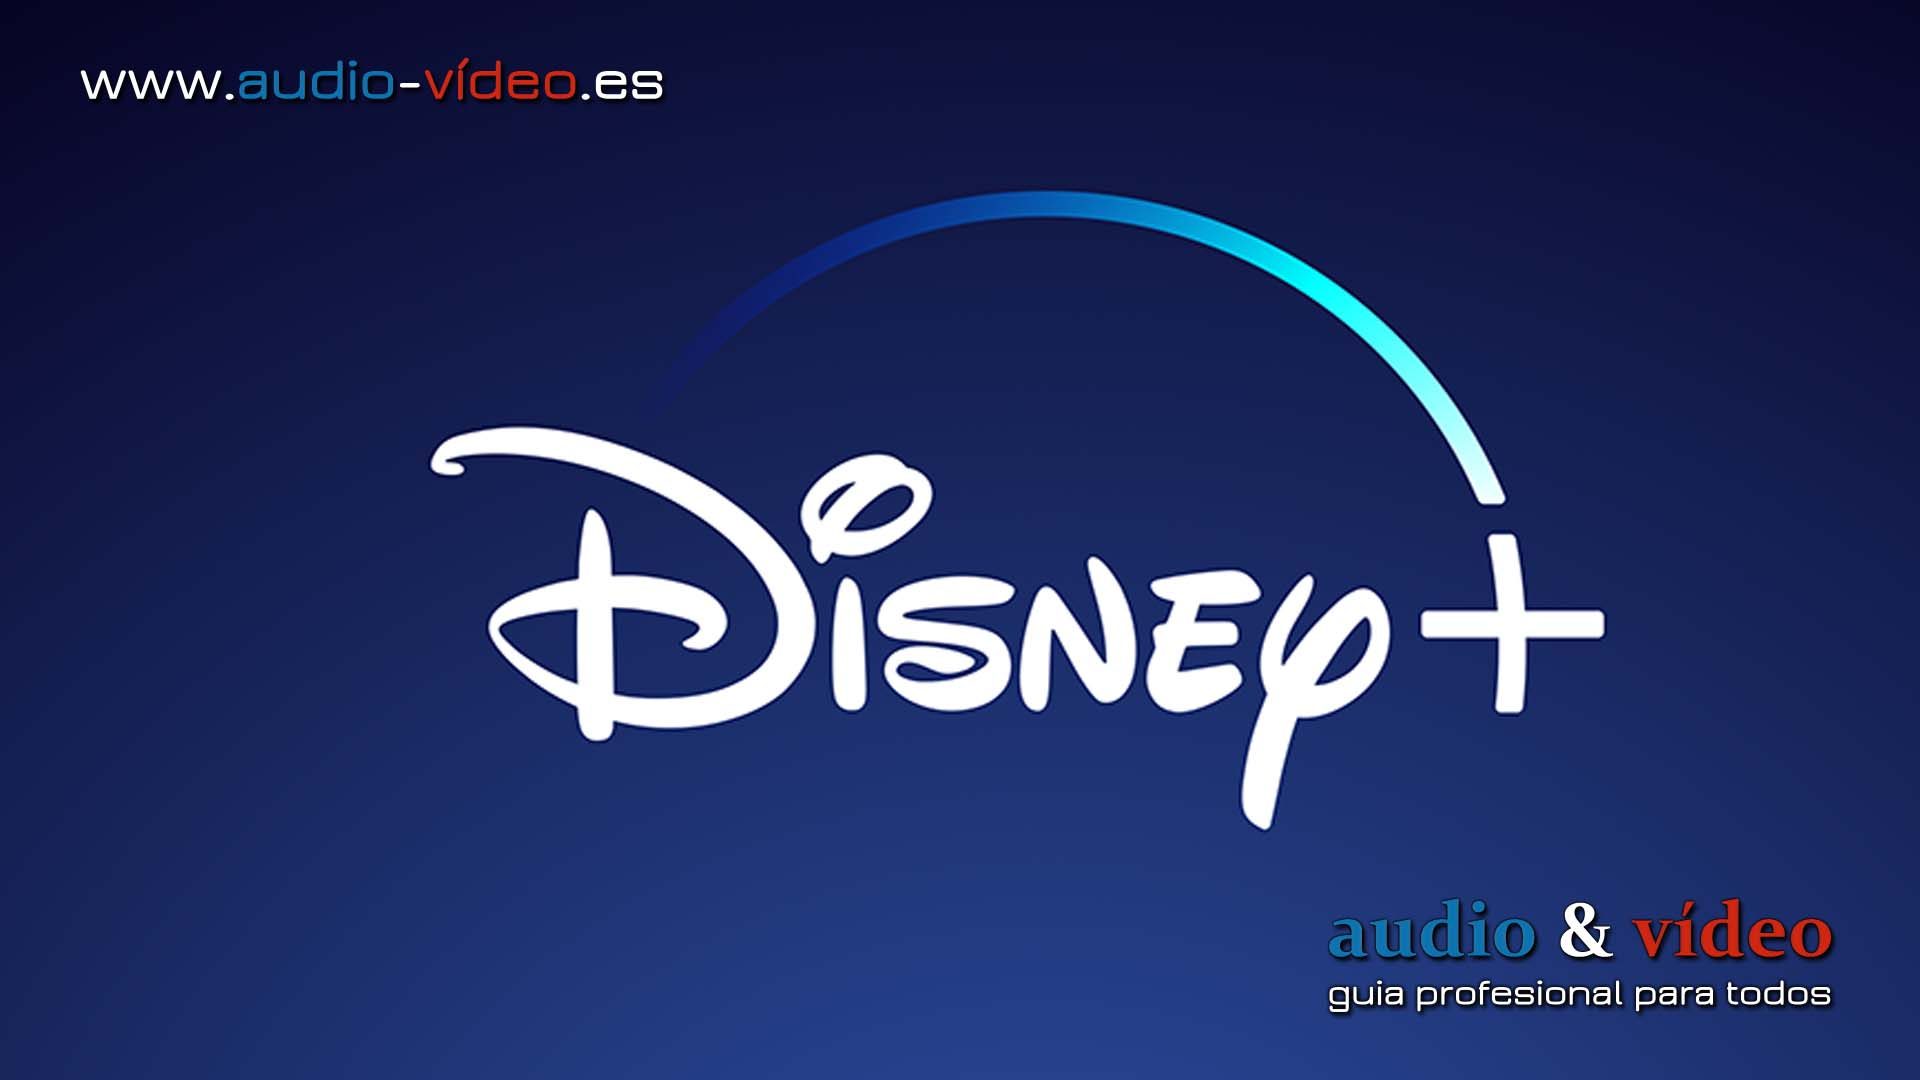 Disney+ 4K ha dejado de funcionar en algunos dispositivos Android TV